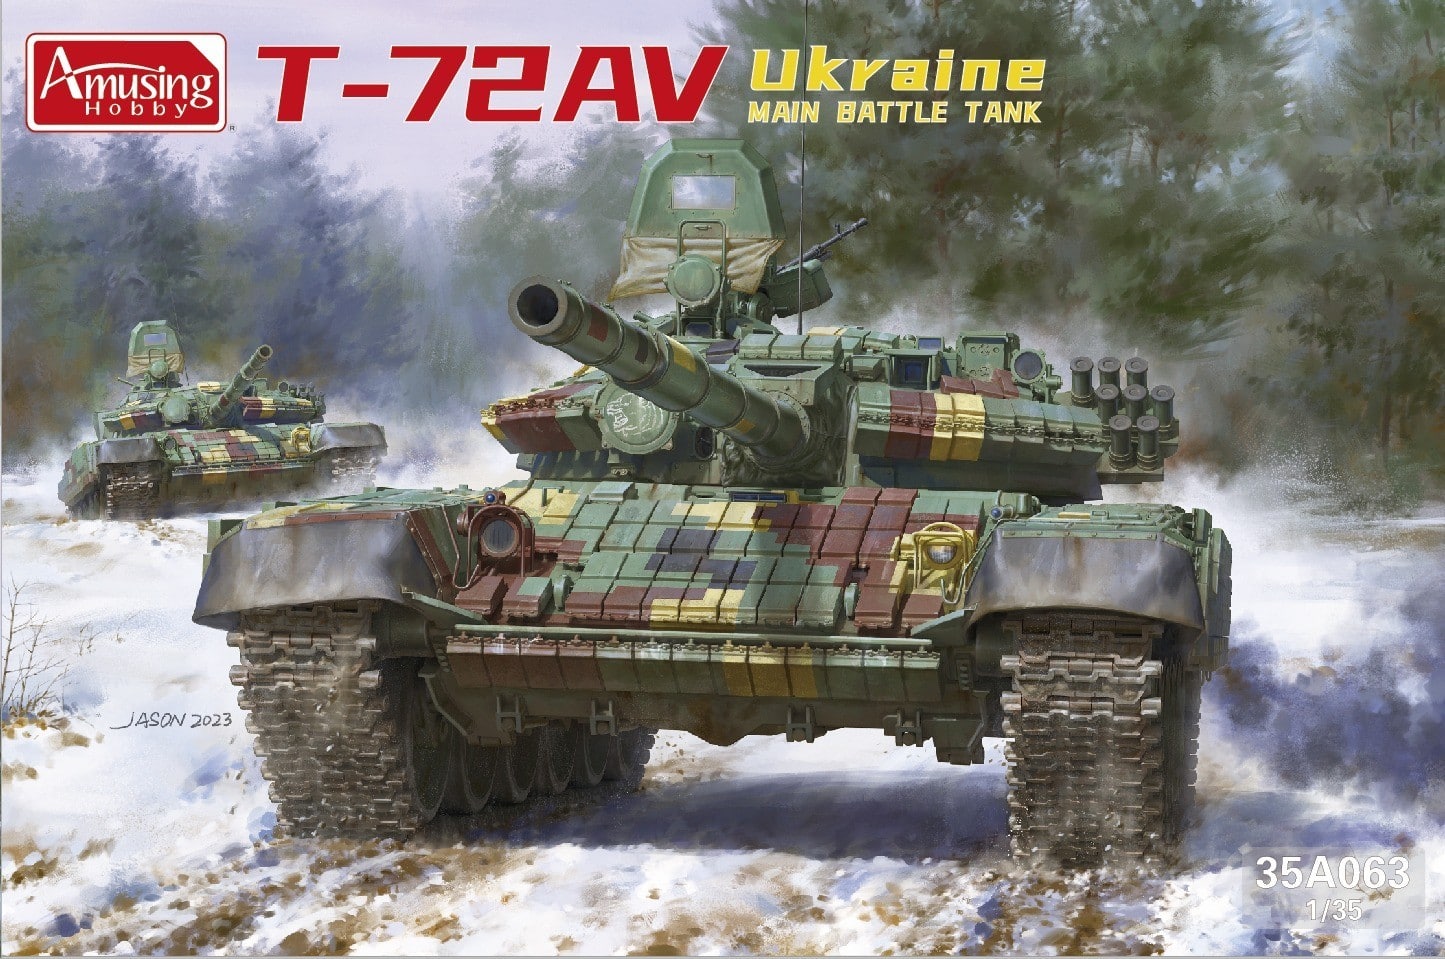 Amusing Hobby T-72AV Ukraine MBT-2